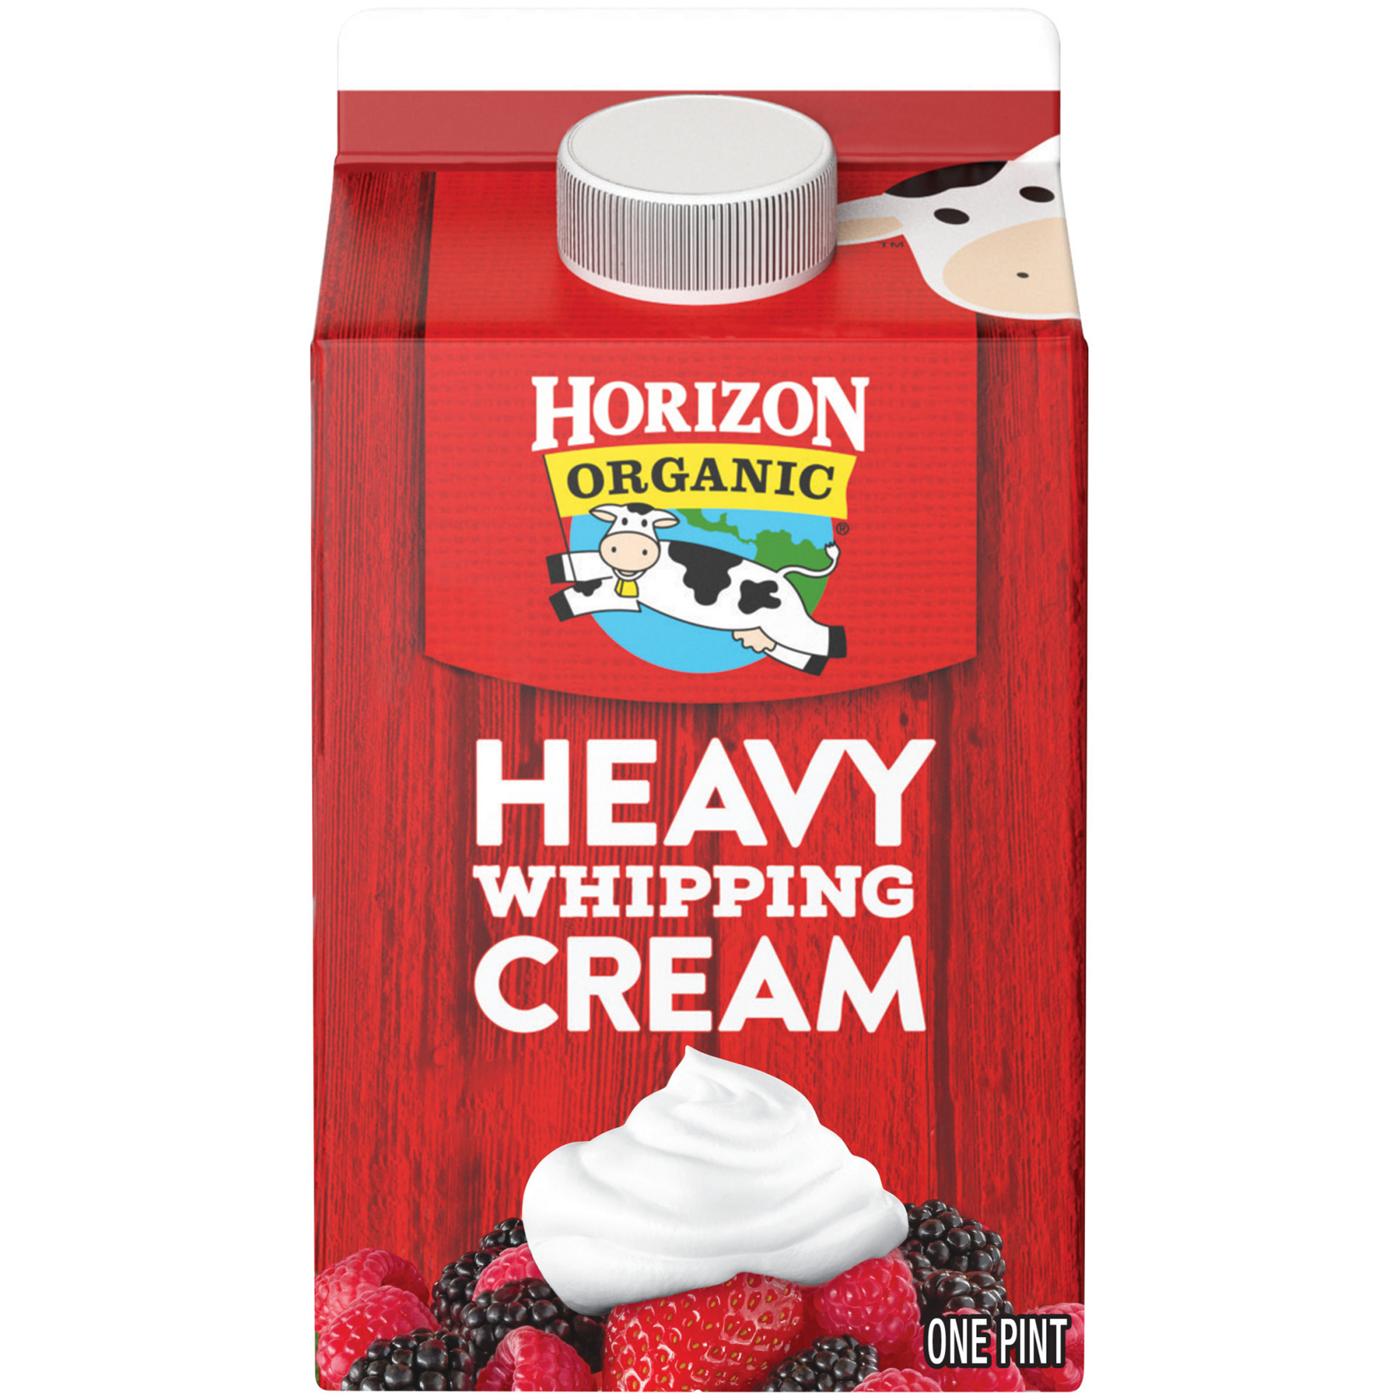 Horizon Organic Heavy Whipping Cream; image 1 of 2